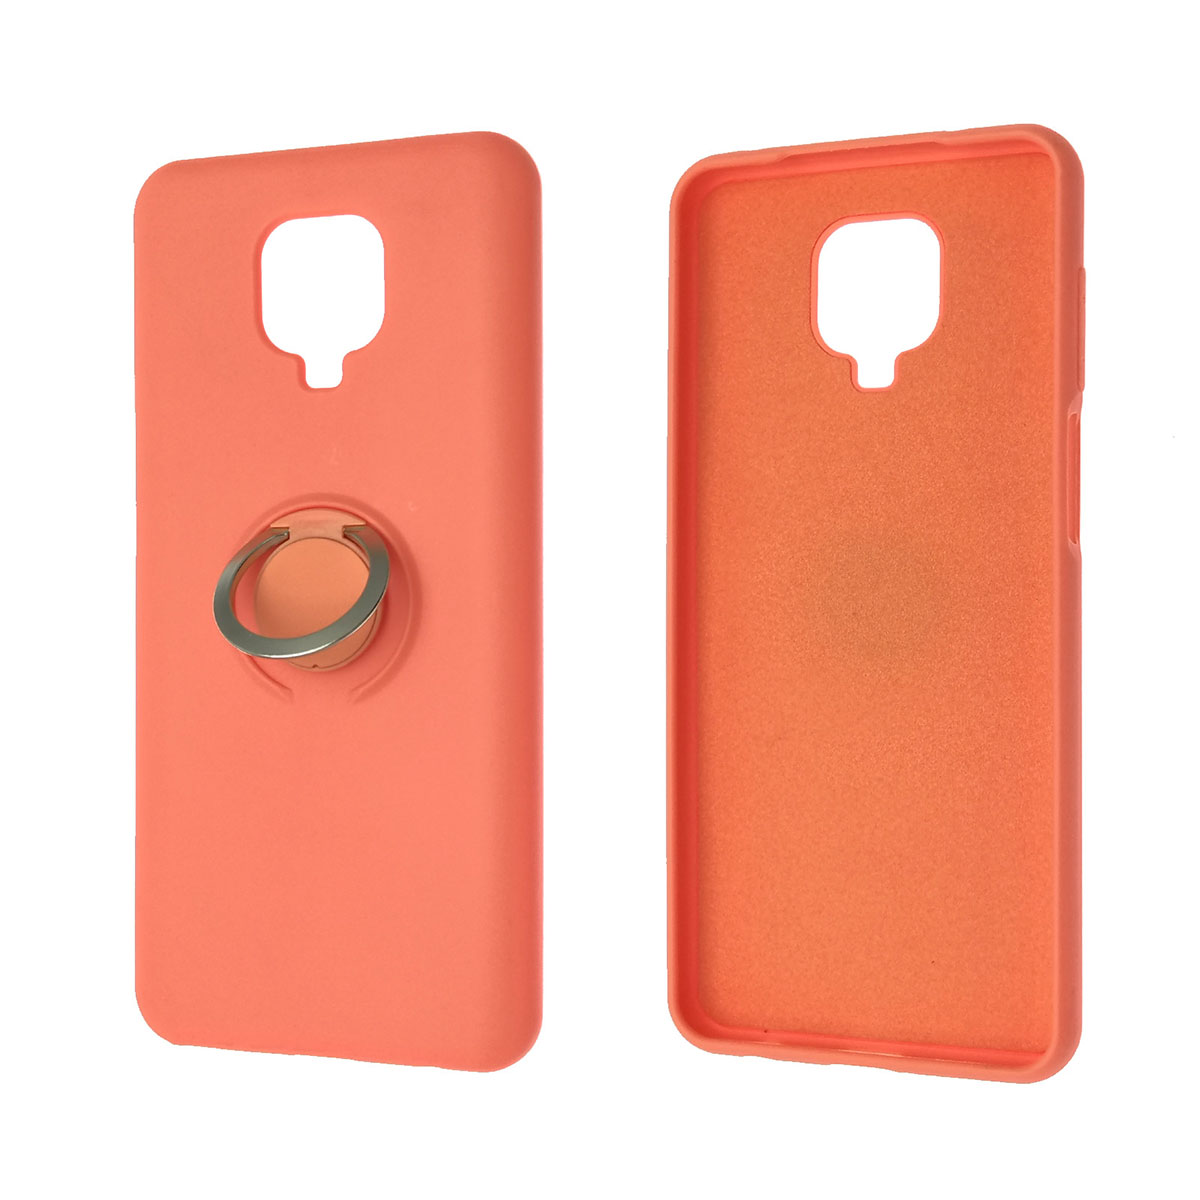 Чехол накладка RING для XIAOMI Redmi Note 9 Pro, Redmi Note 9S, силикон, кольцо держатель, цвет оранжевый.